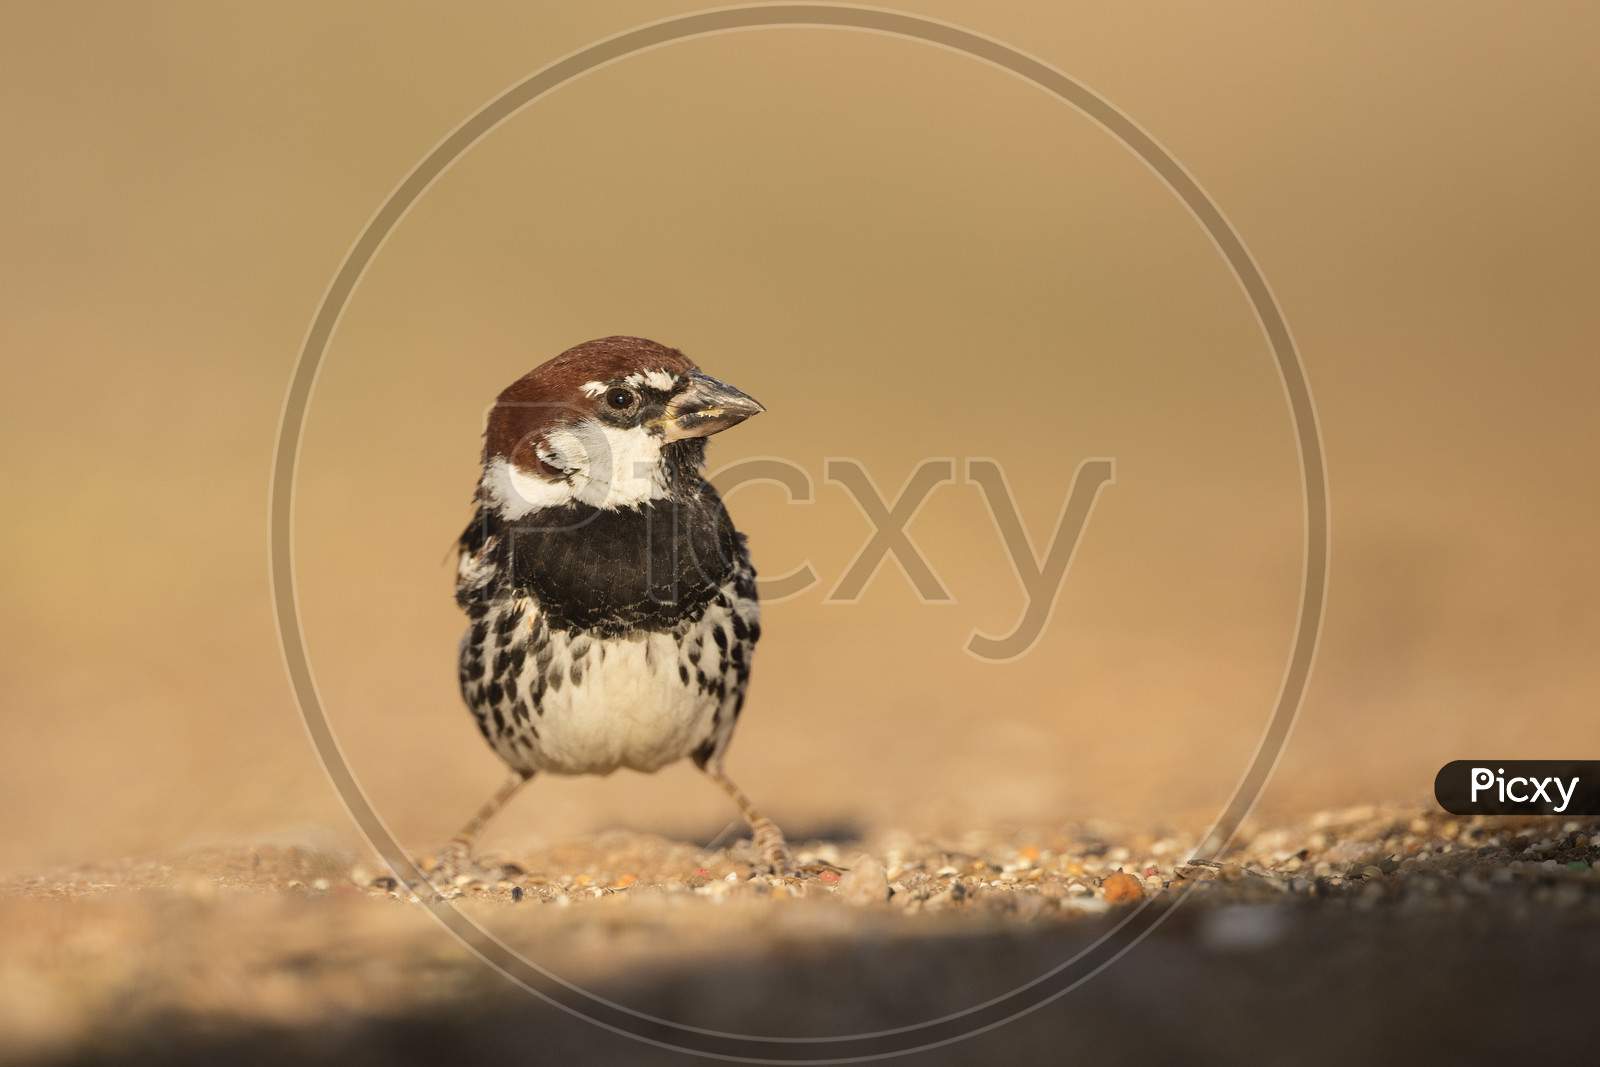 Cute sparrow sitting alone